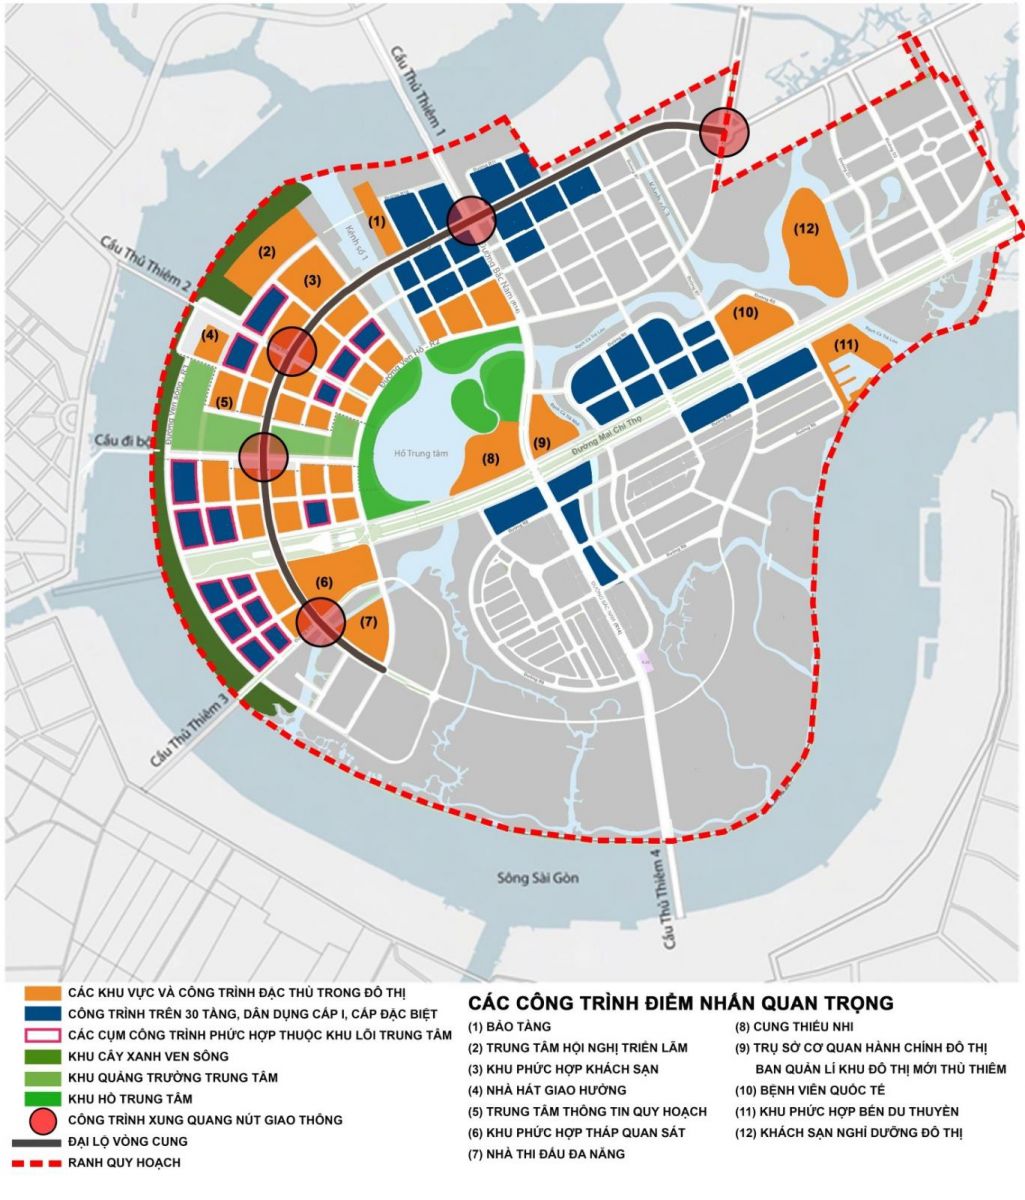 Sơ đồ 3: Các khu vực có ý nghĩa quan trọng về cảnh quan và vị trí các cửa ngõ khu đô thị tại Khu đô thị mới Thủ Thiêm năm 2022.